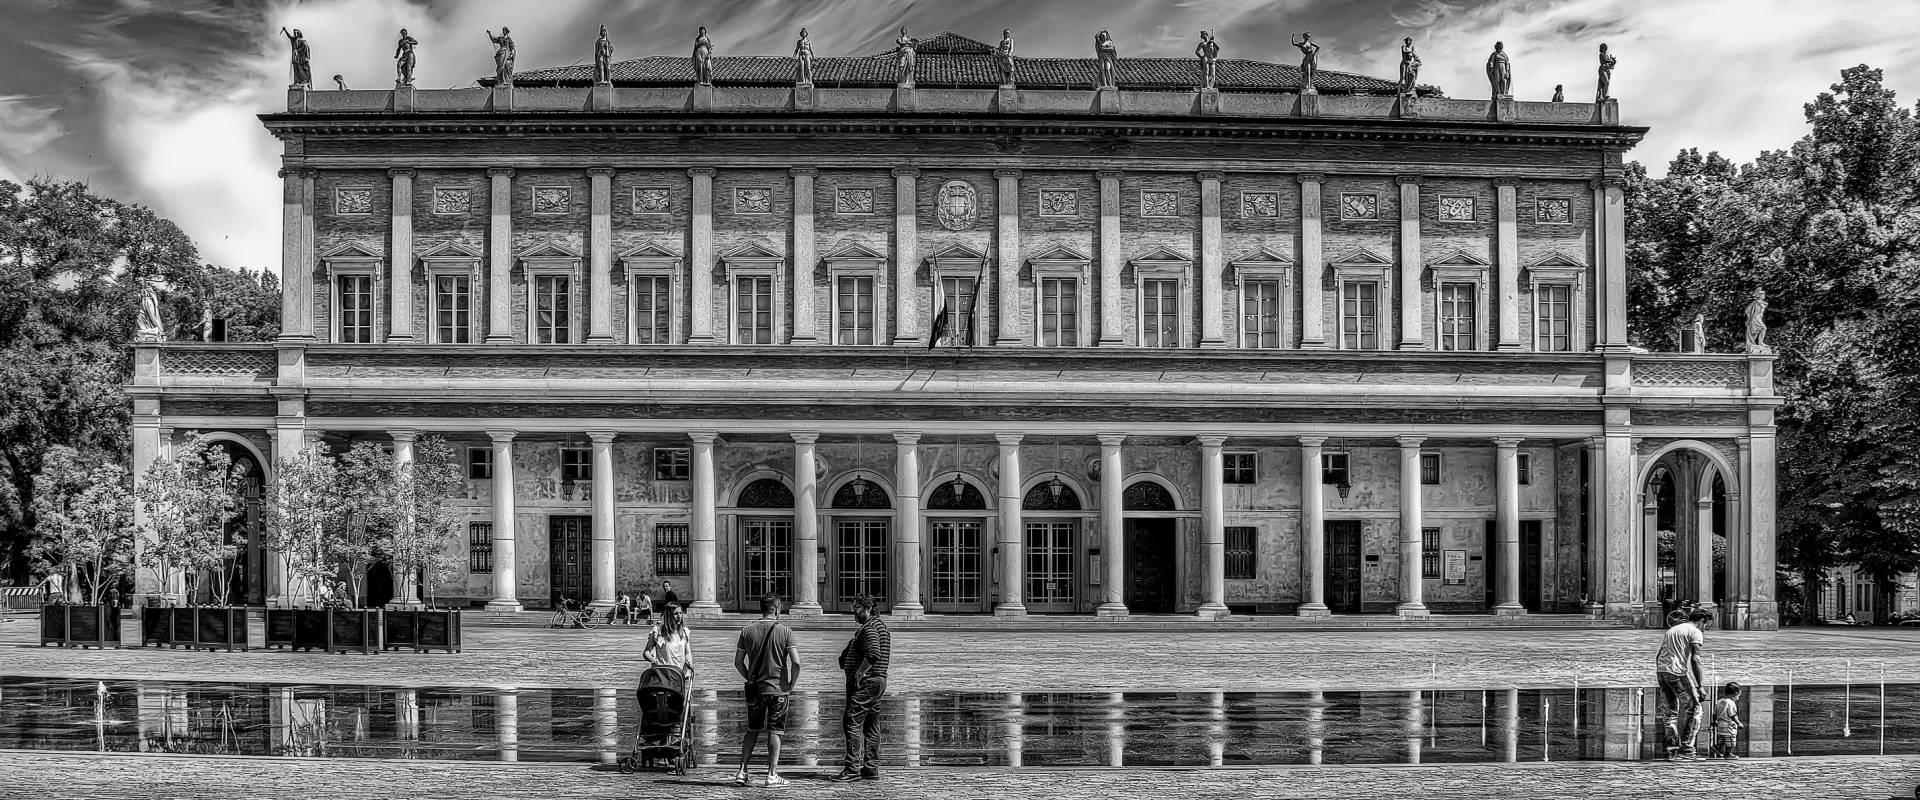 Teatro Valli Reggio Emilia foto di Goethe100